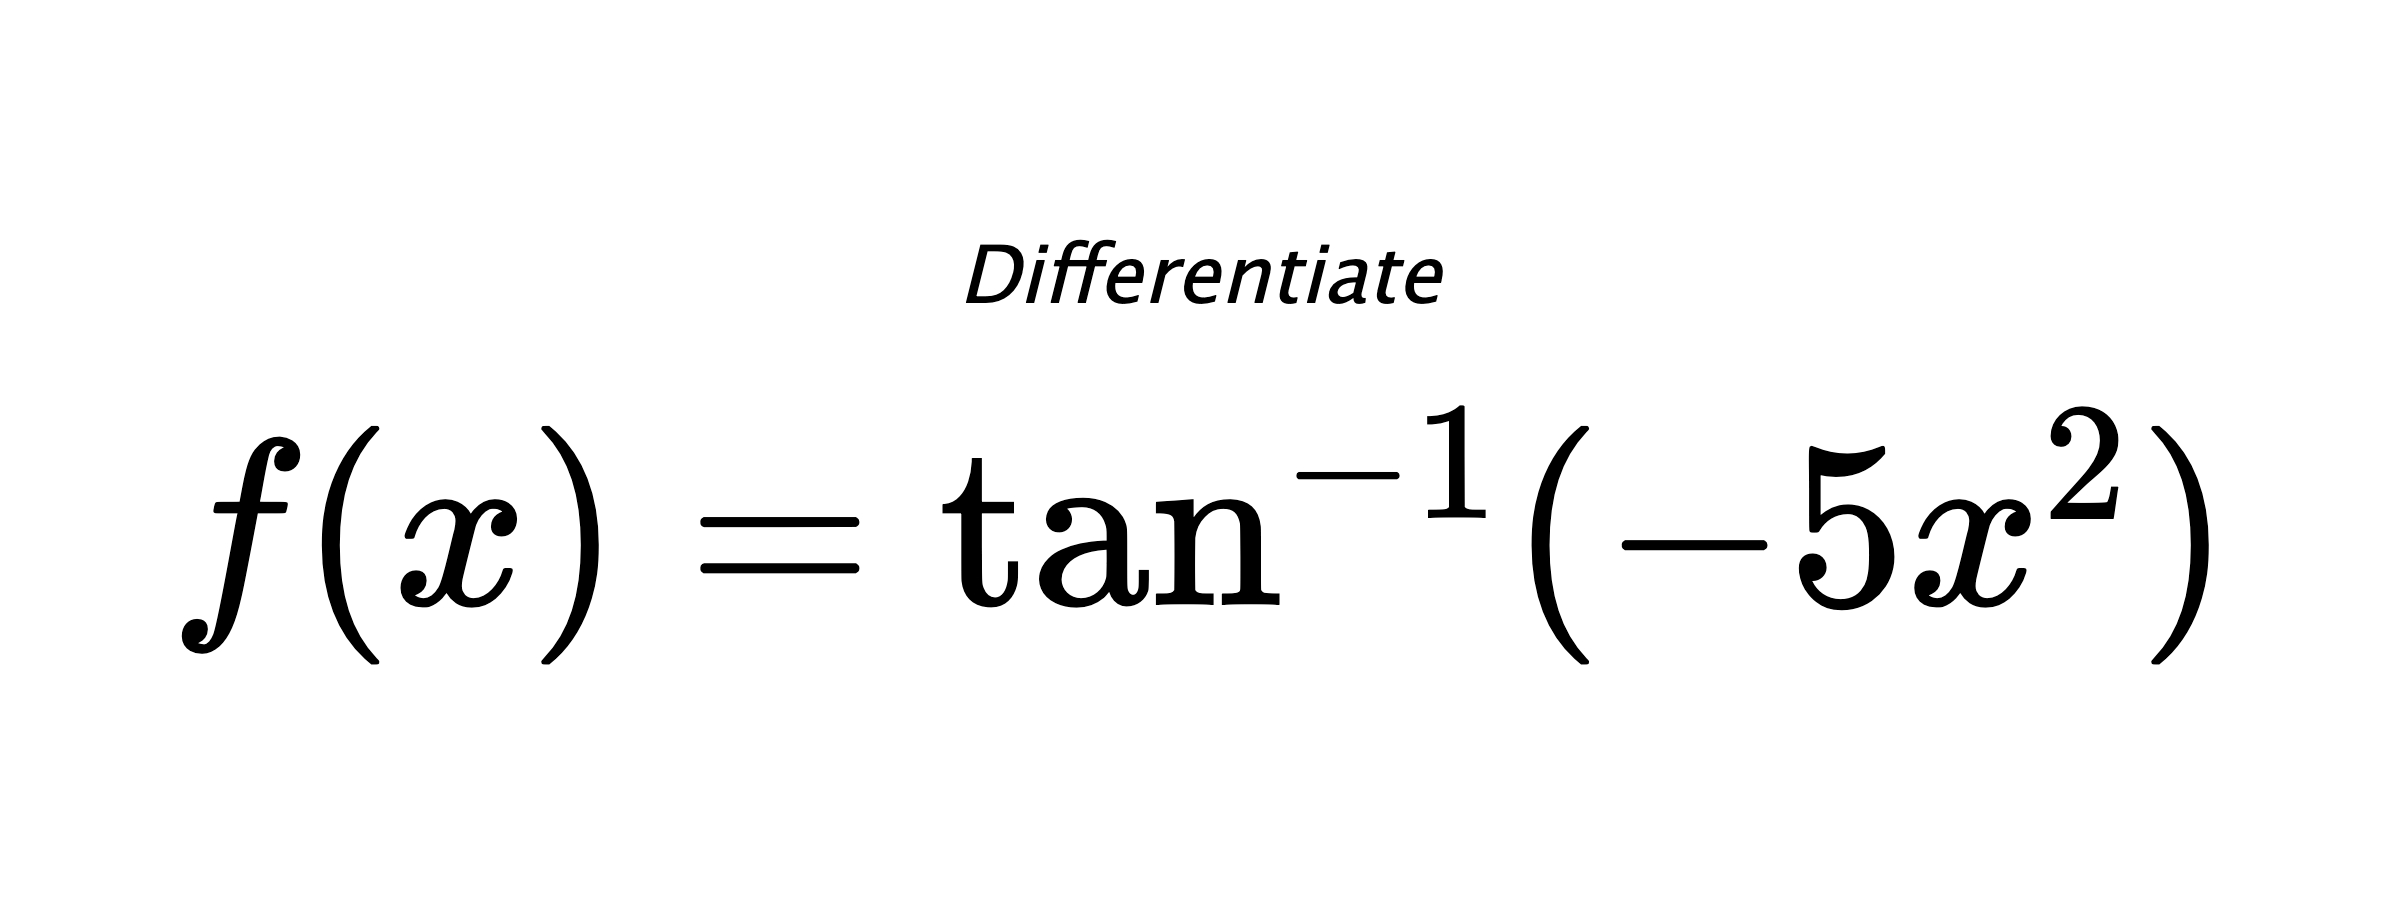 Differentiate $ f(x) = \tan^{-1} (-5x^2) $